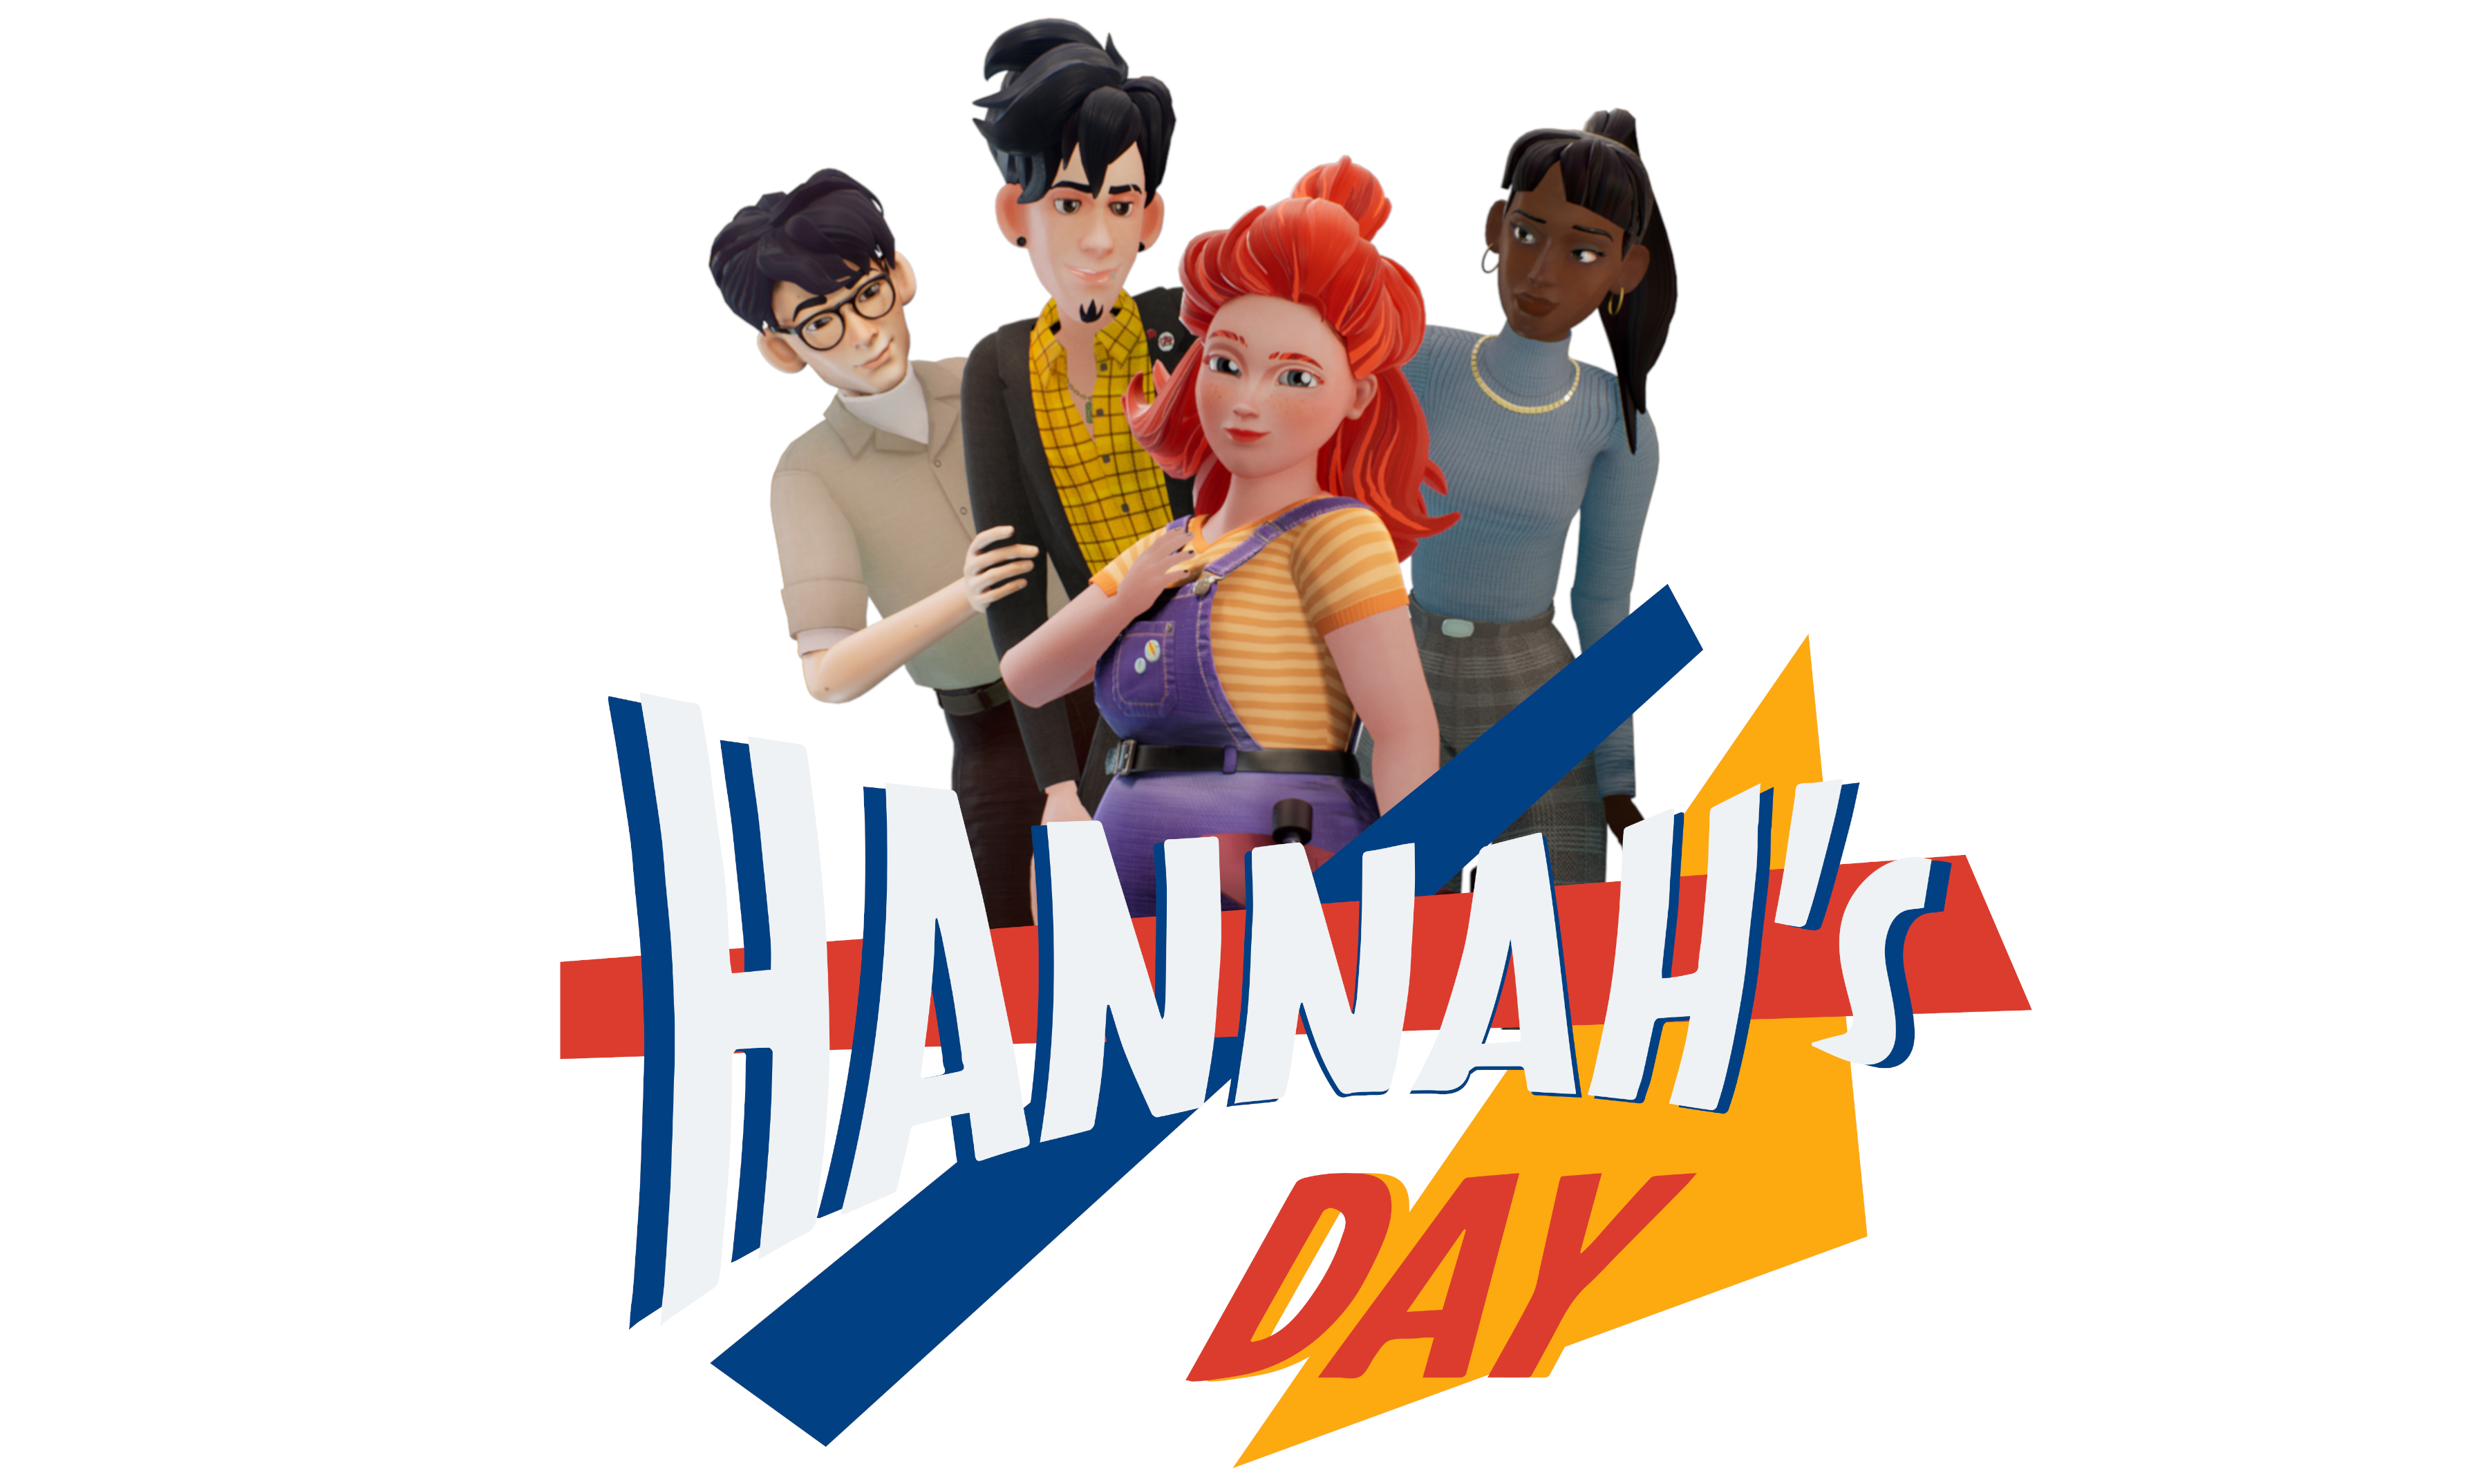 Hannah's Day